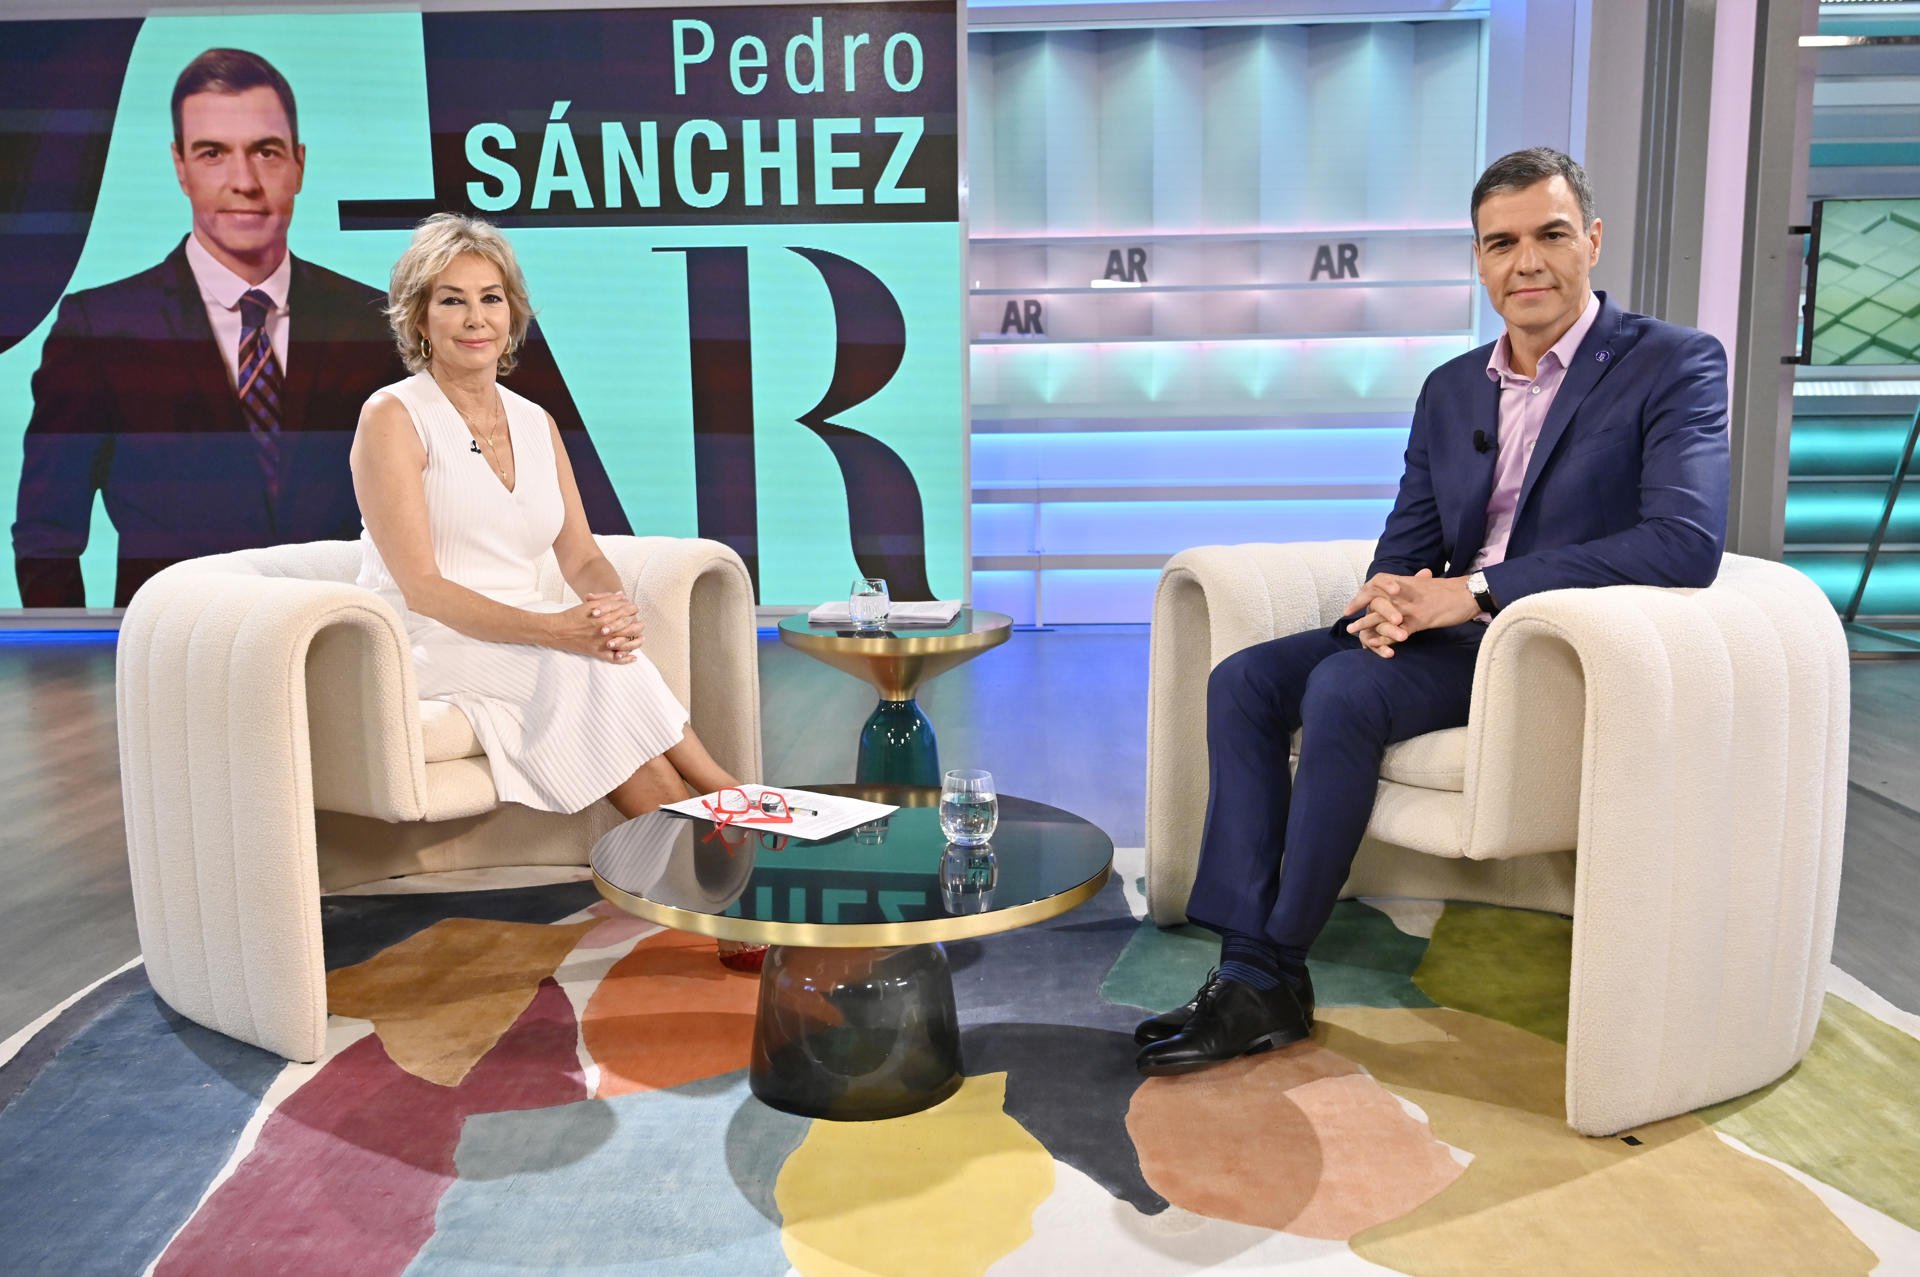 Sánchez s’encara a Ana Rosa i presumeix de poder “respirar convivència a Barcelona”